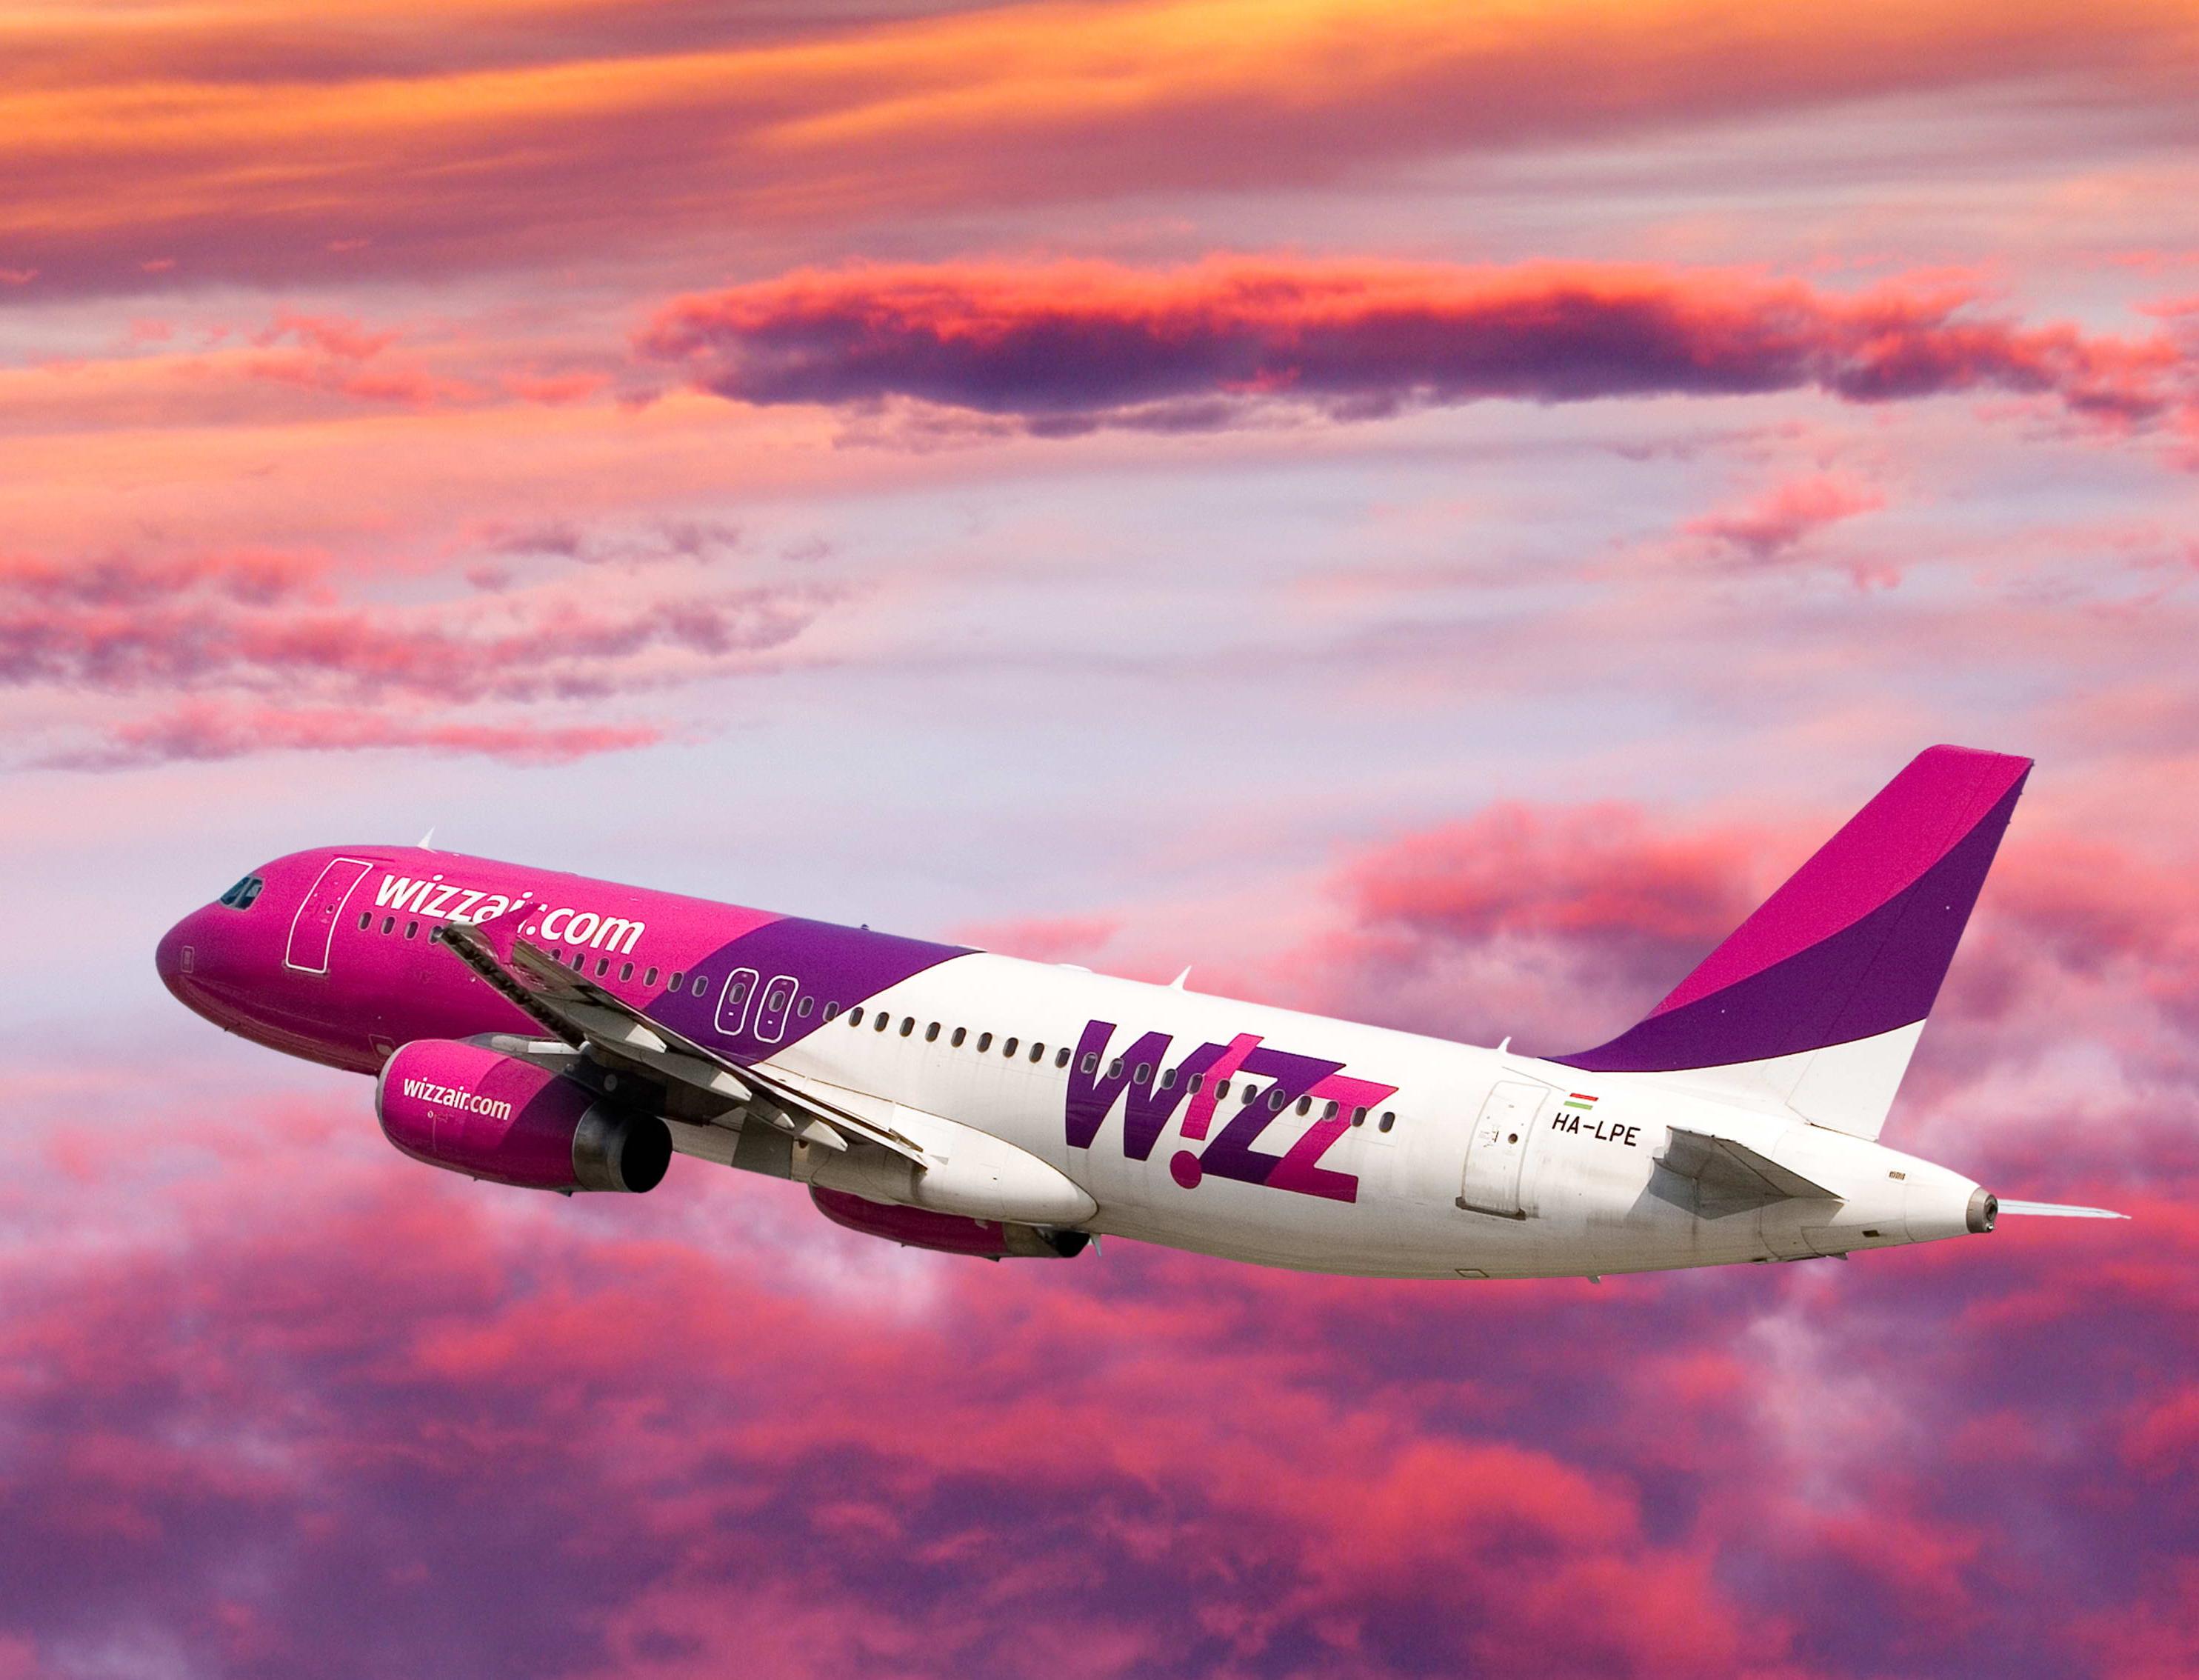 2000 евро заплатит Wizz Air за идею «экологичного» дизайна для самолета